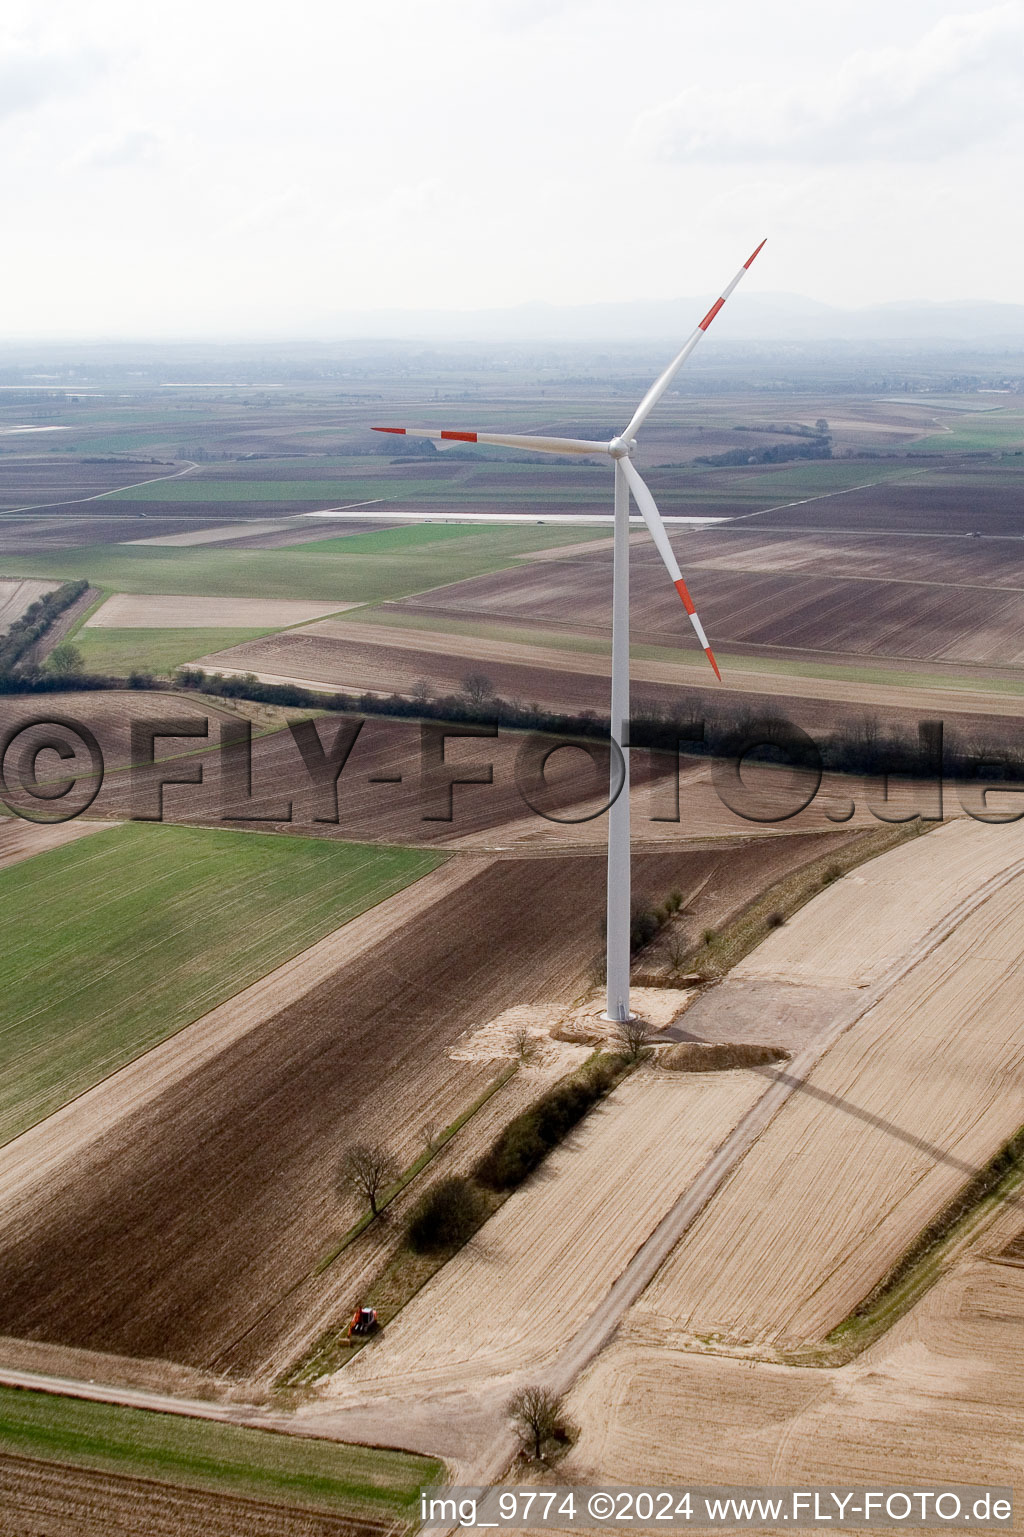 Éoliennes à Offenbach an der Queich dans le département Rhénanie-Palatinat, Allemagne hors des airs